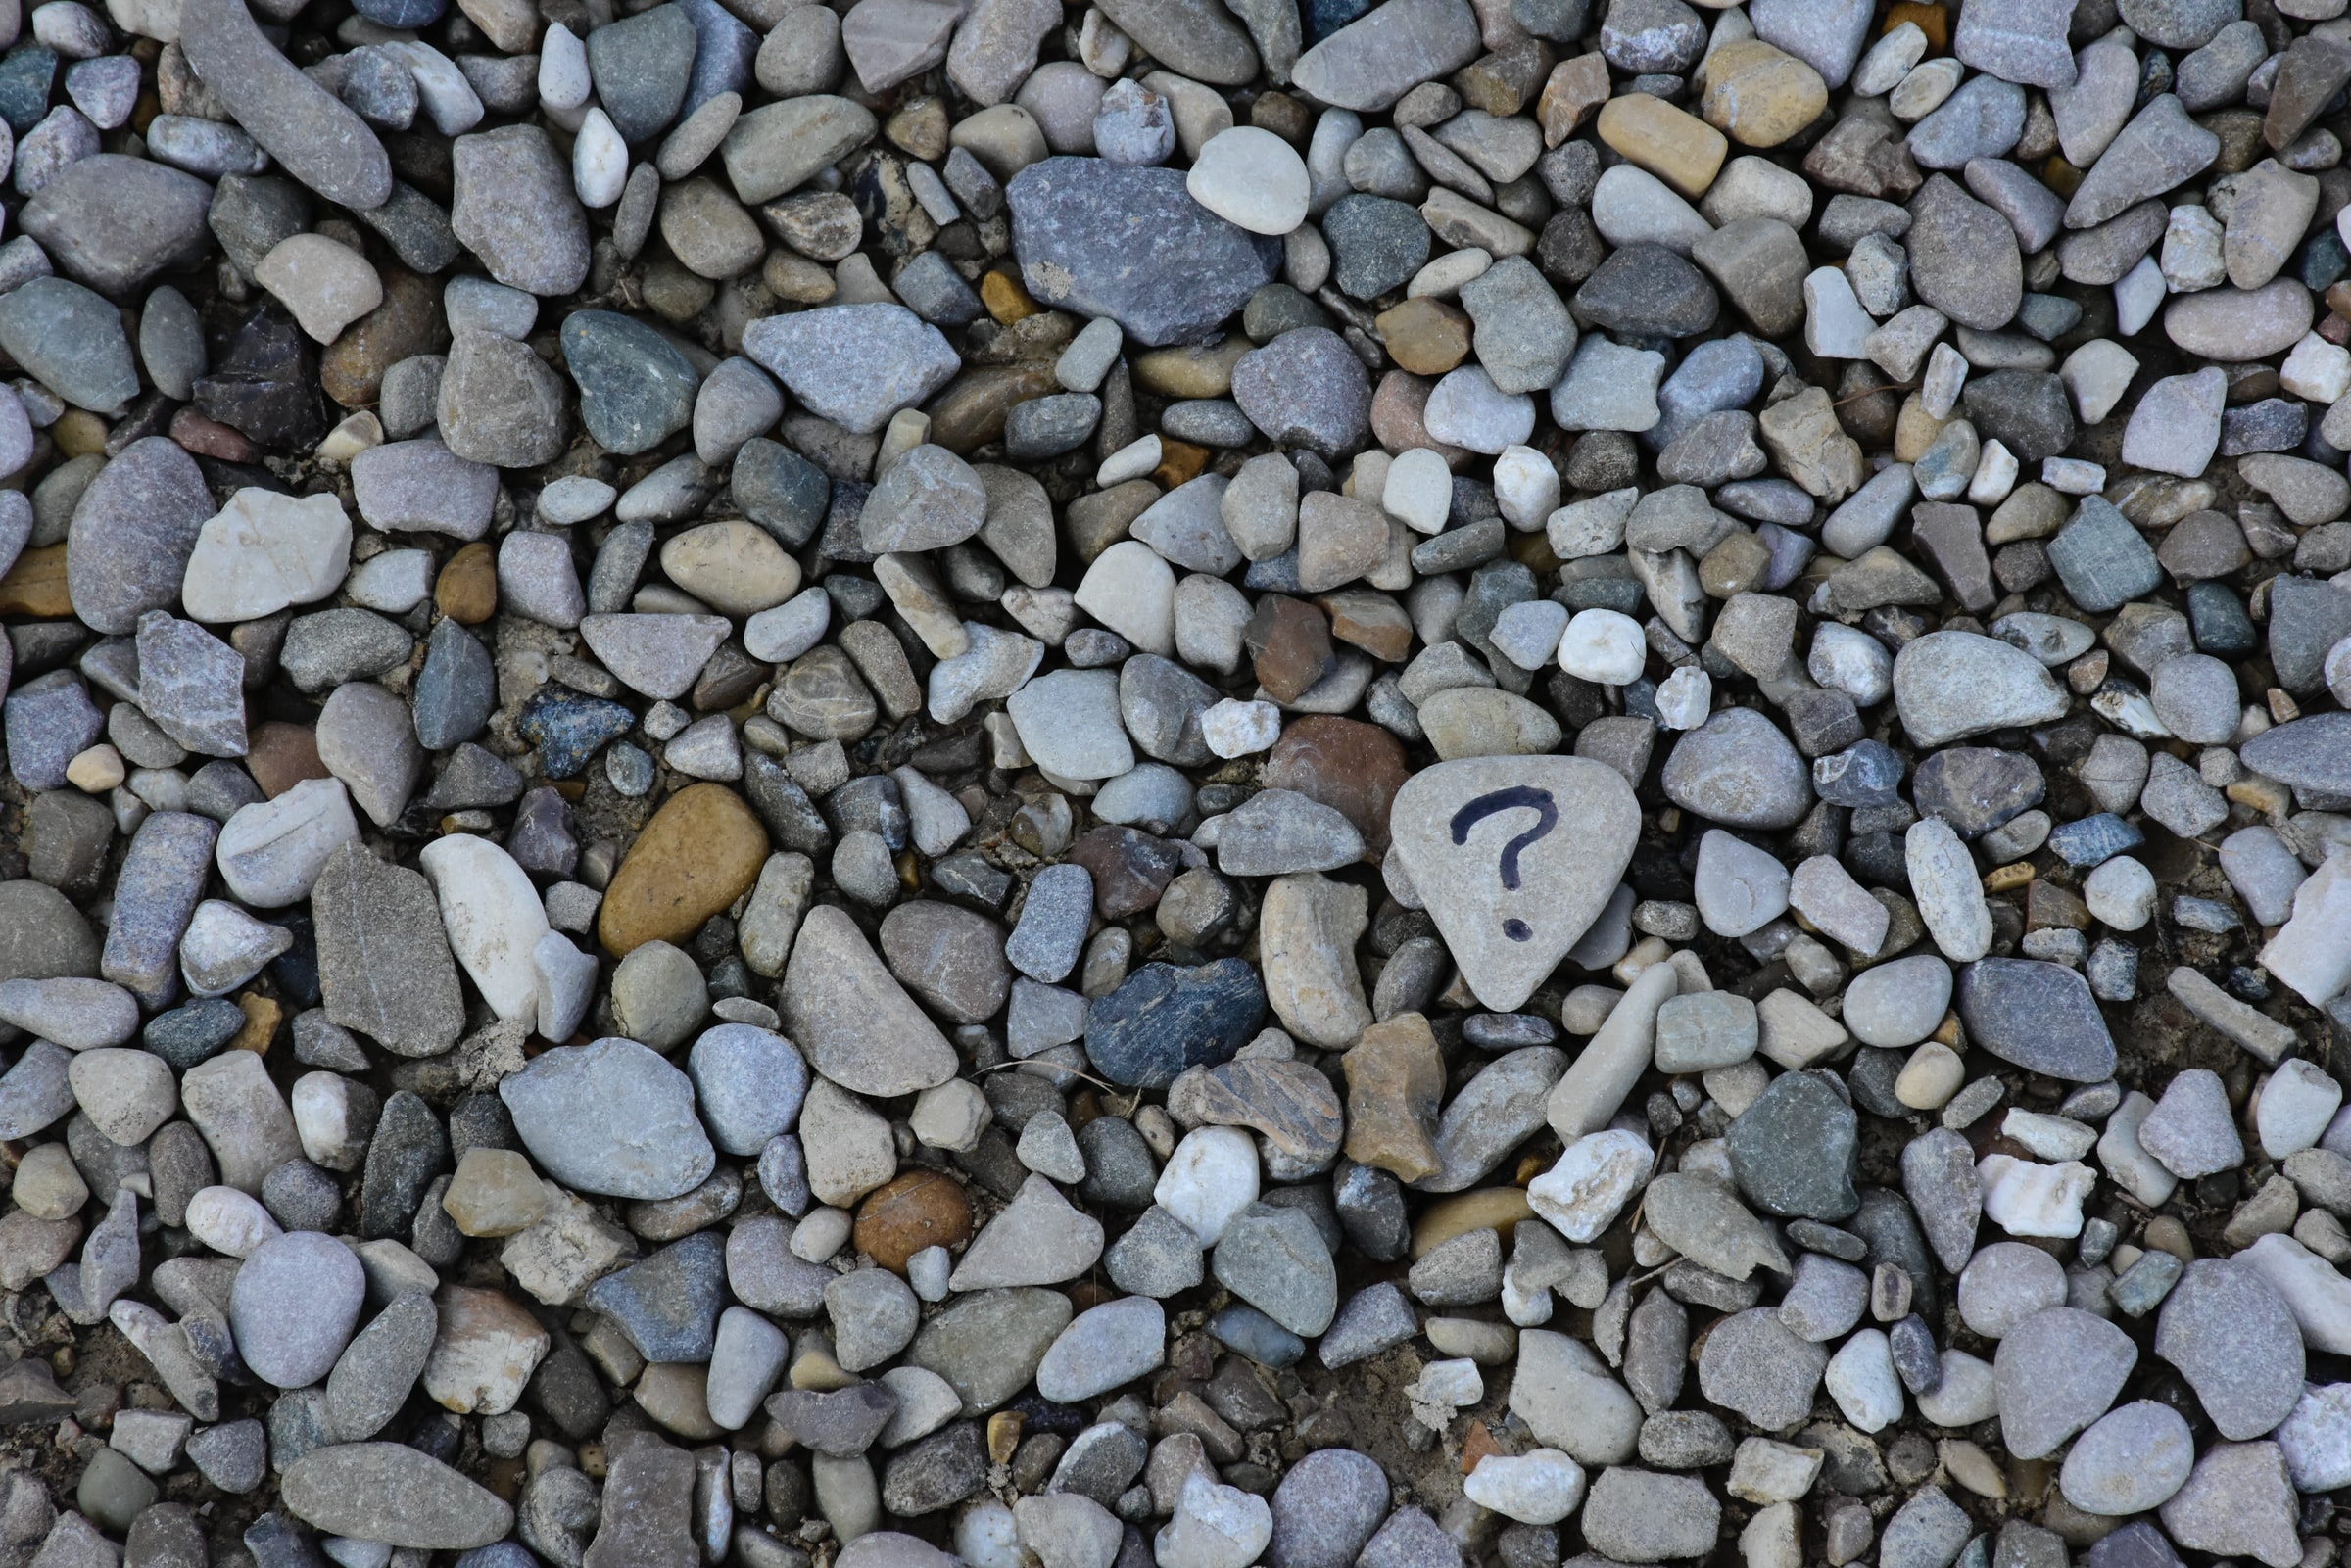 Question Mark on a Pebble on a Beach